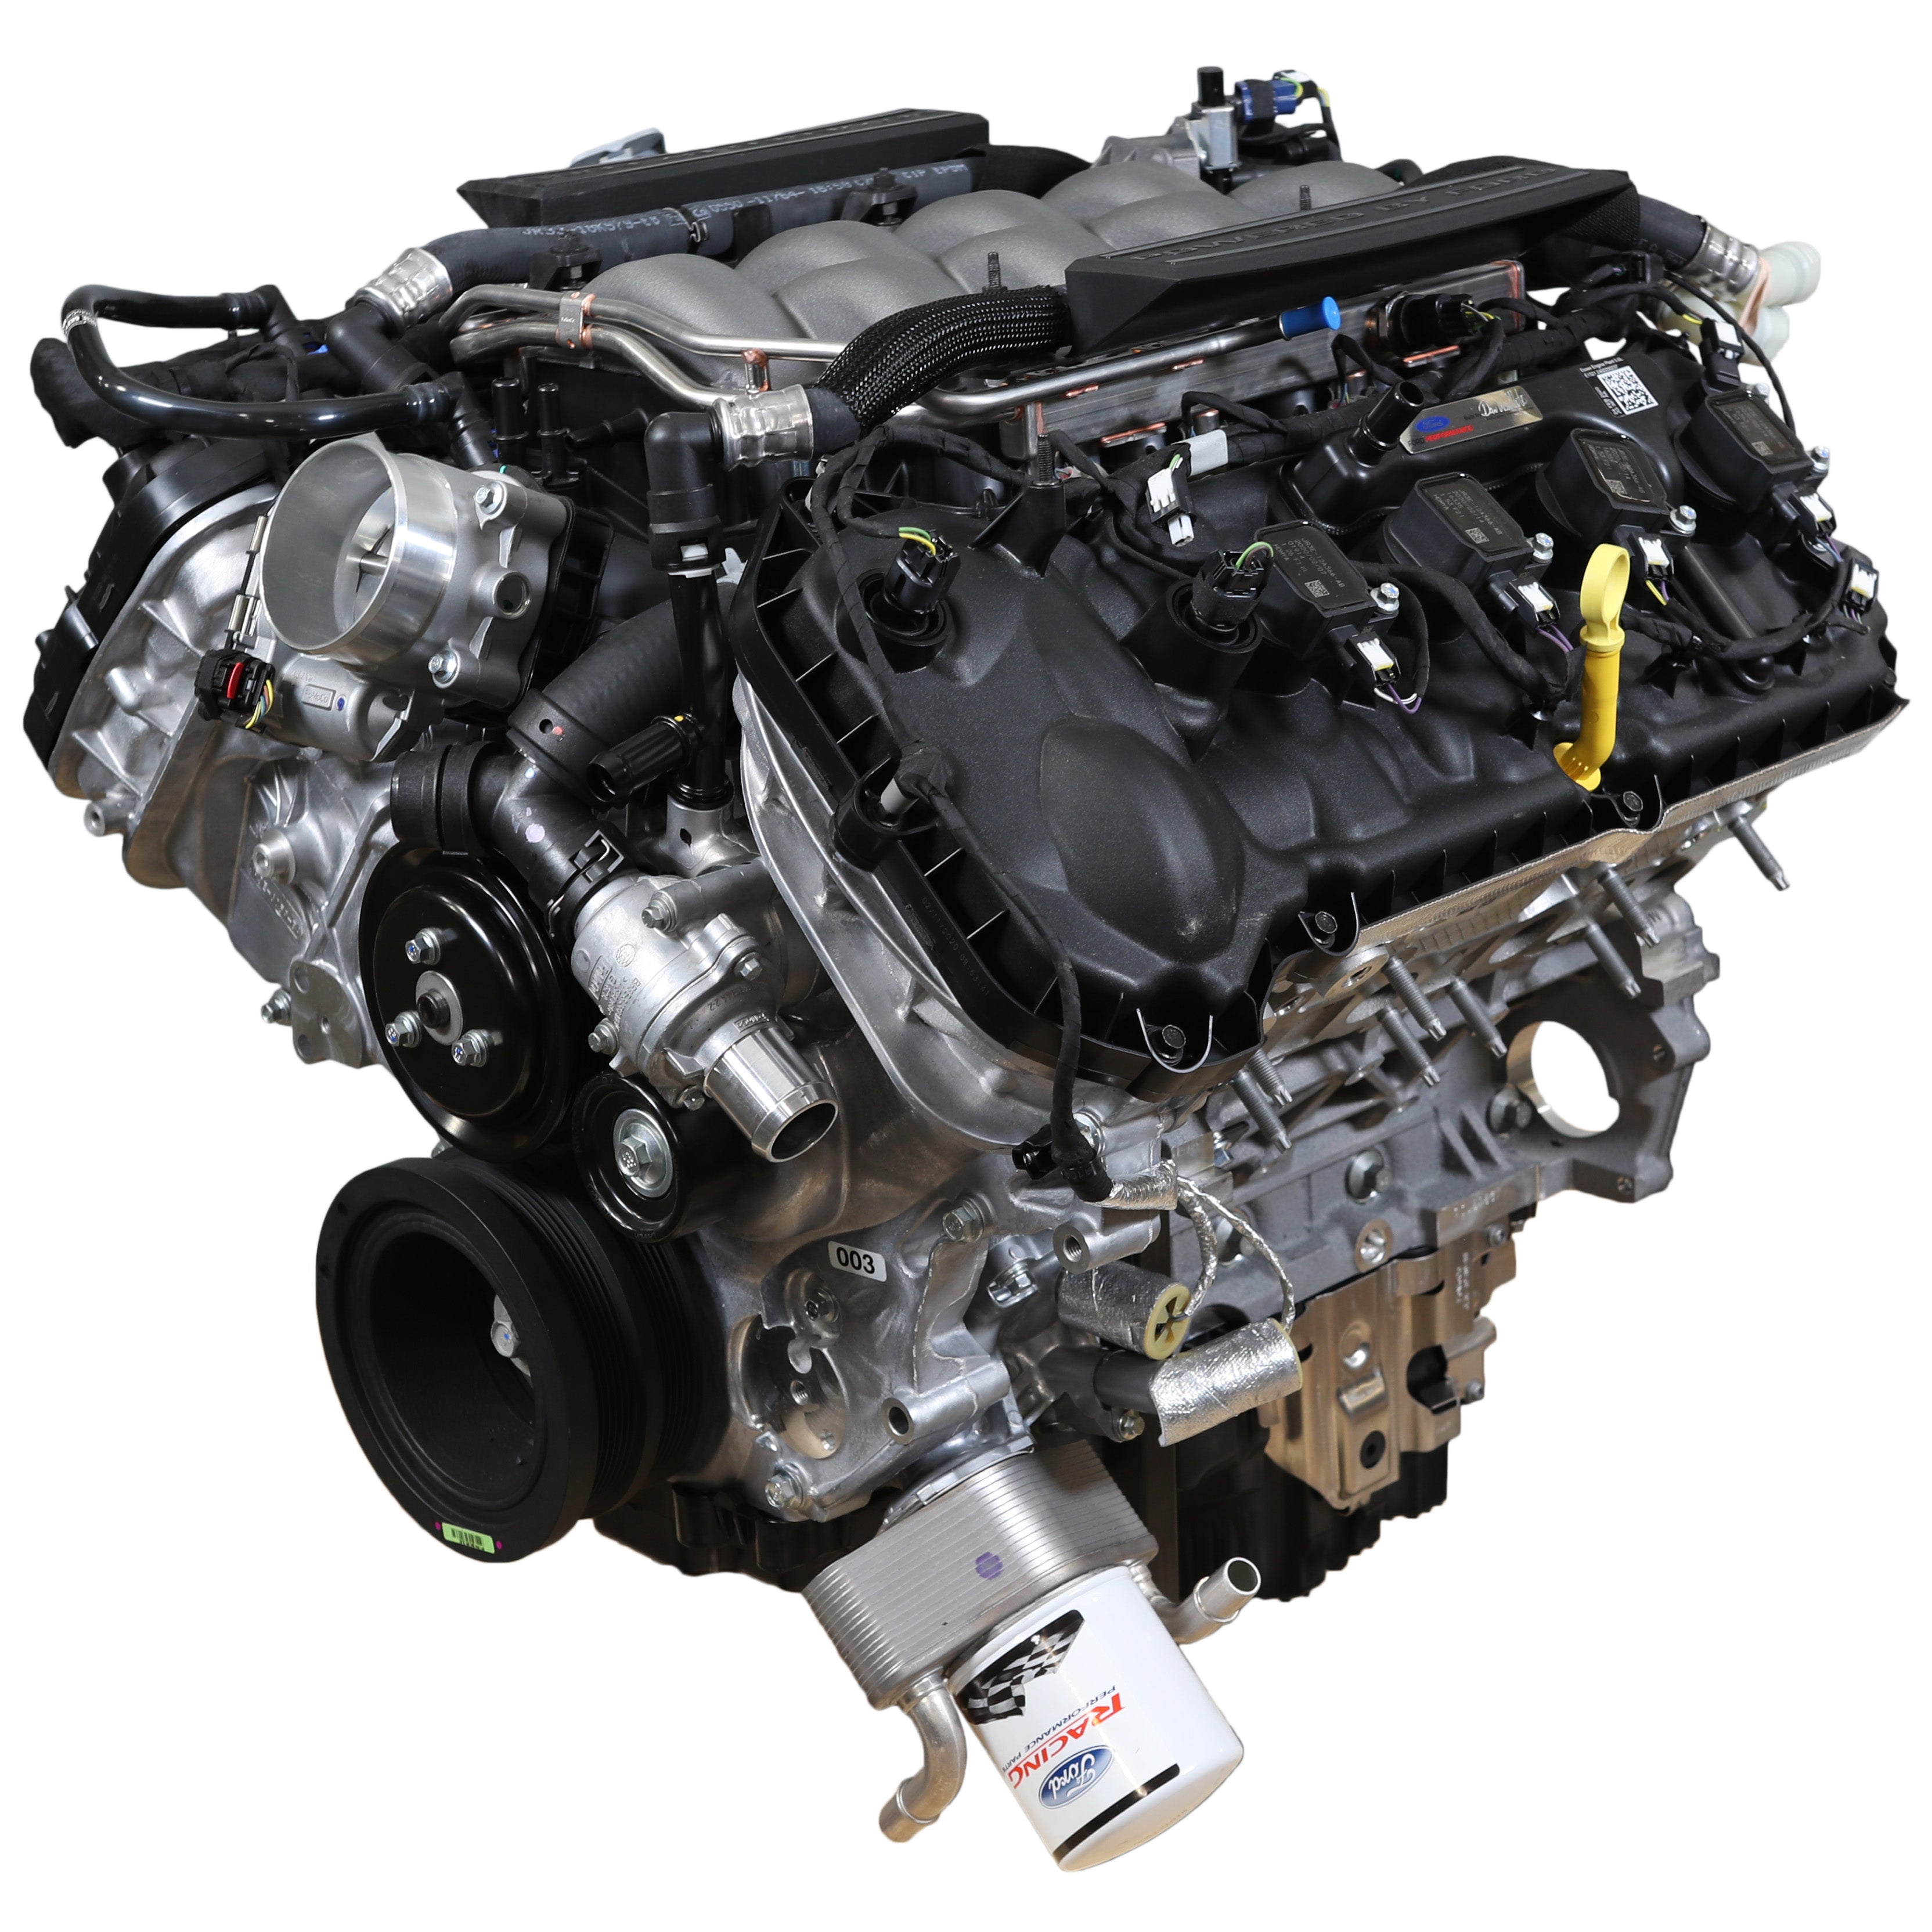 محرك Ford Performance 5.0L "Aluminator" Gen 3 Crate Engine - ضغط منخفض لأجهزة FI